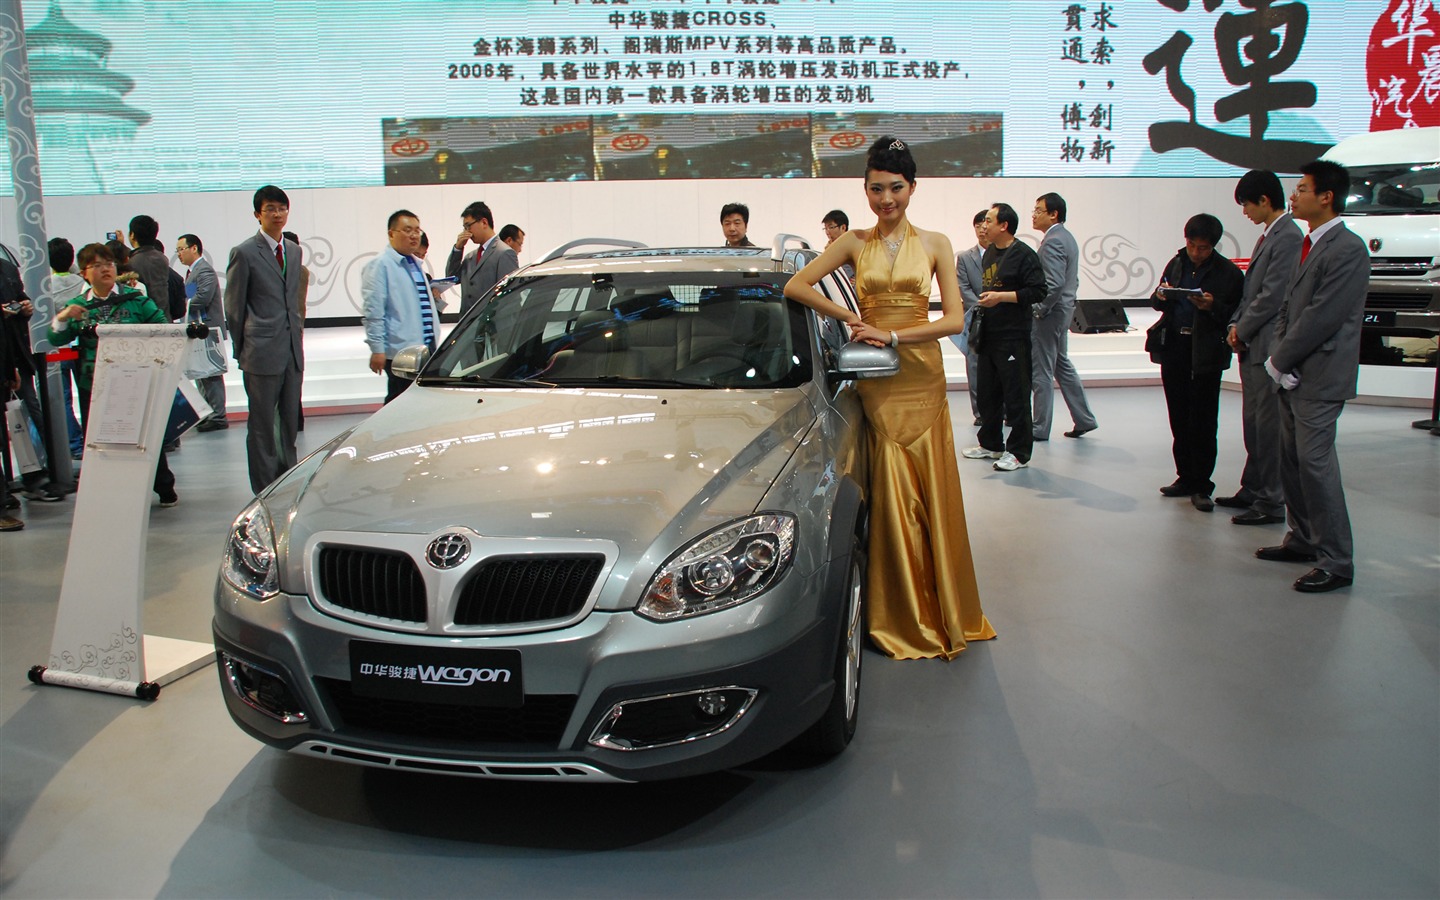 2010 Beijing International Auto Show (1) (z321x123 works) #18 - 1440x900